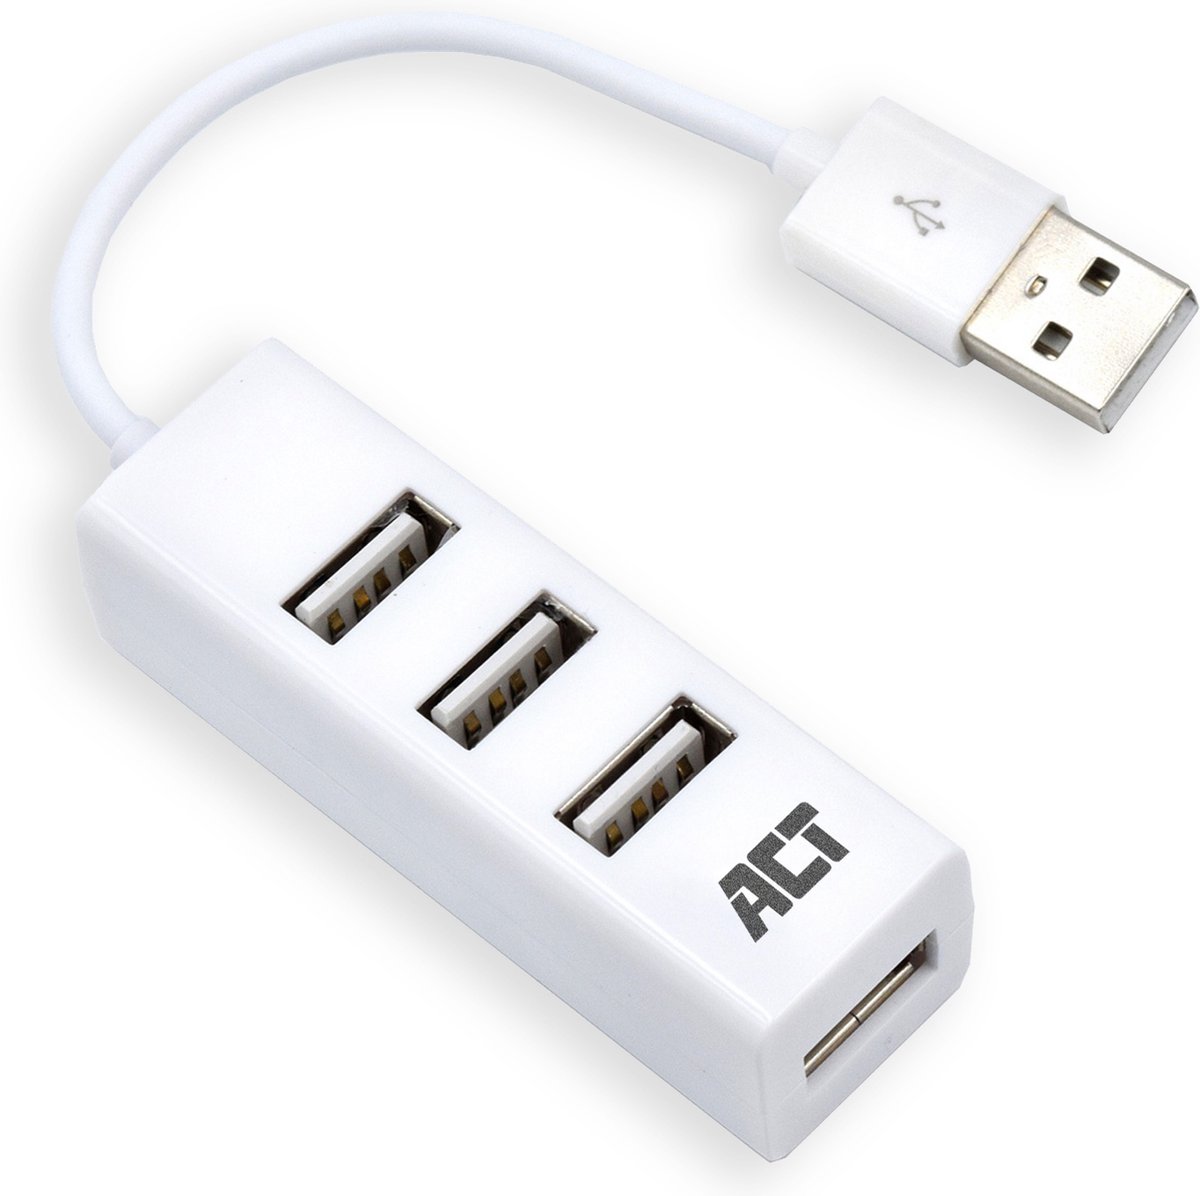 Eminent USB 2.0 Hub mini 4 port white